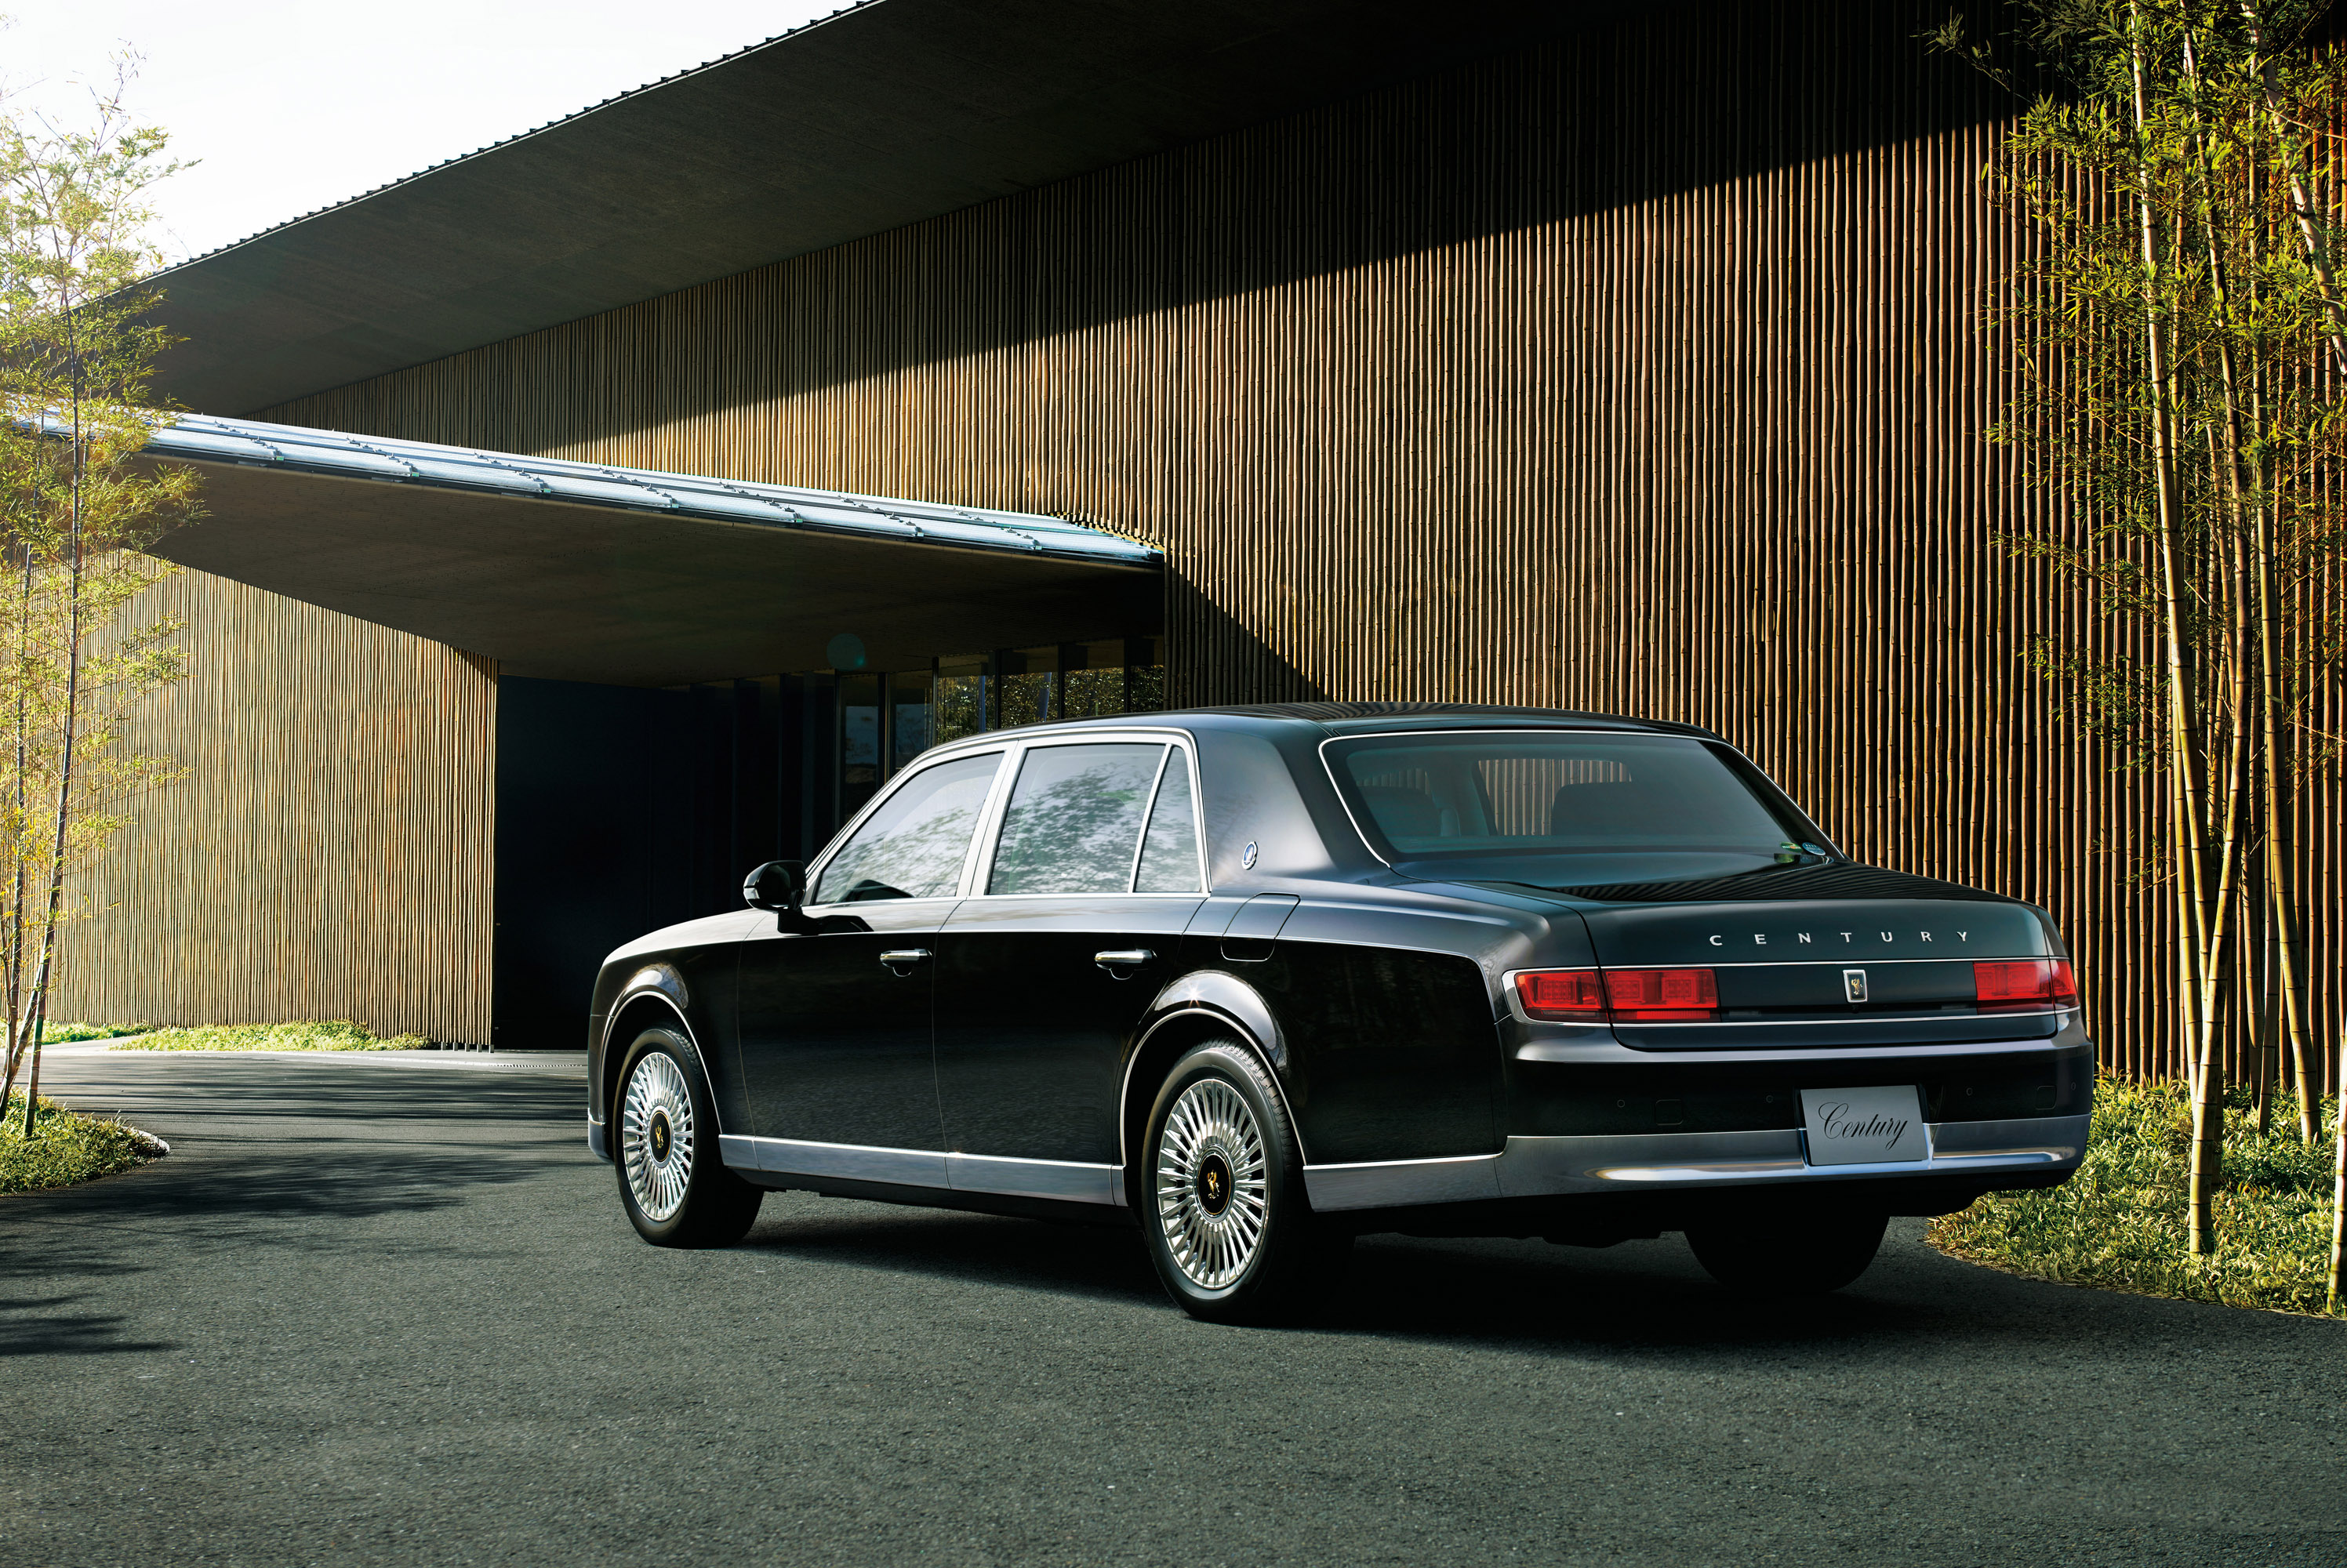 После дебюта модели еще в 1967 году, Century сумел сосредоточить внимание на себе благодаря многочисленными модификациям и особенностям. Последняя модель третьего поколения поддерживает эту традицию и демонстрирует так называемое «monozukuri» - всеох